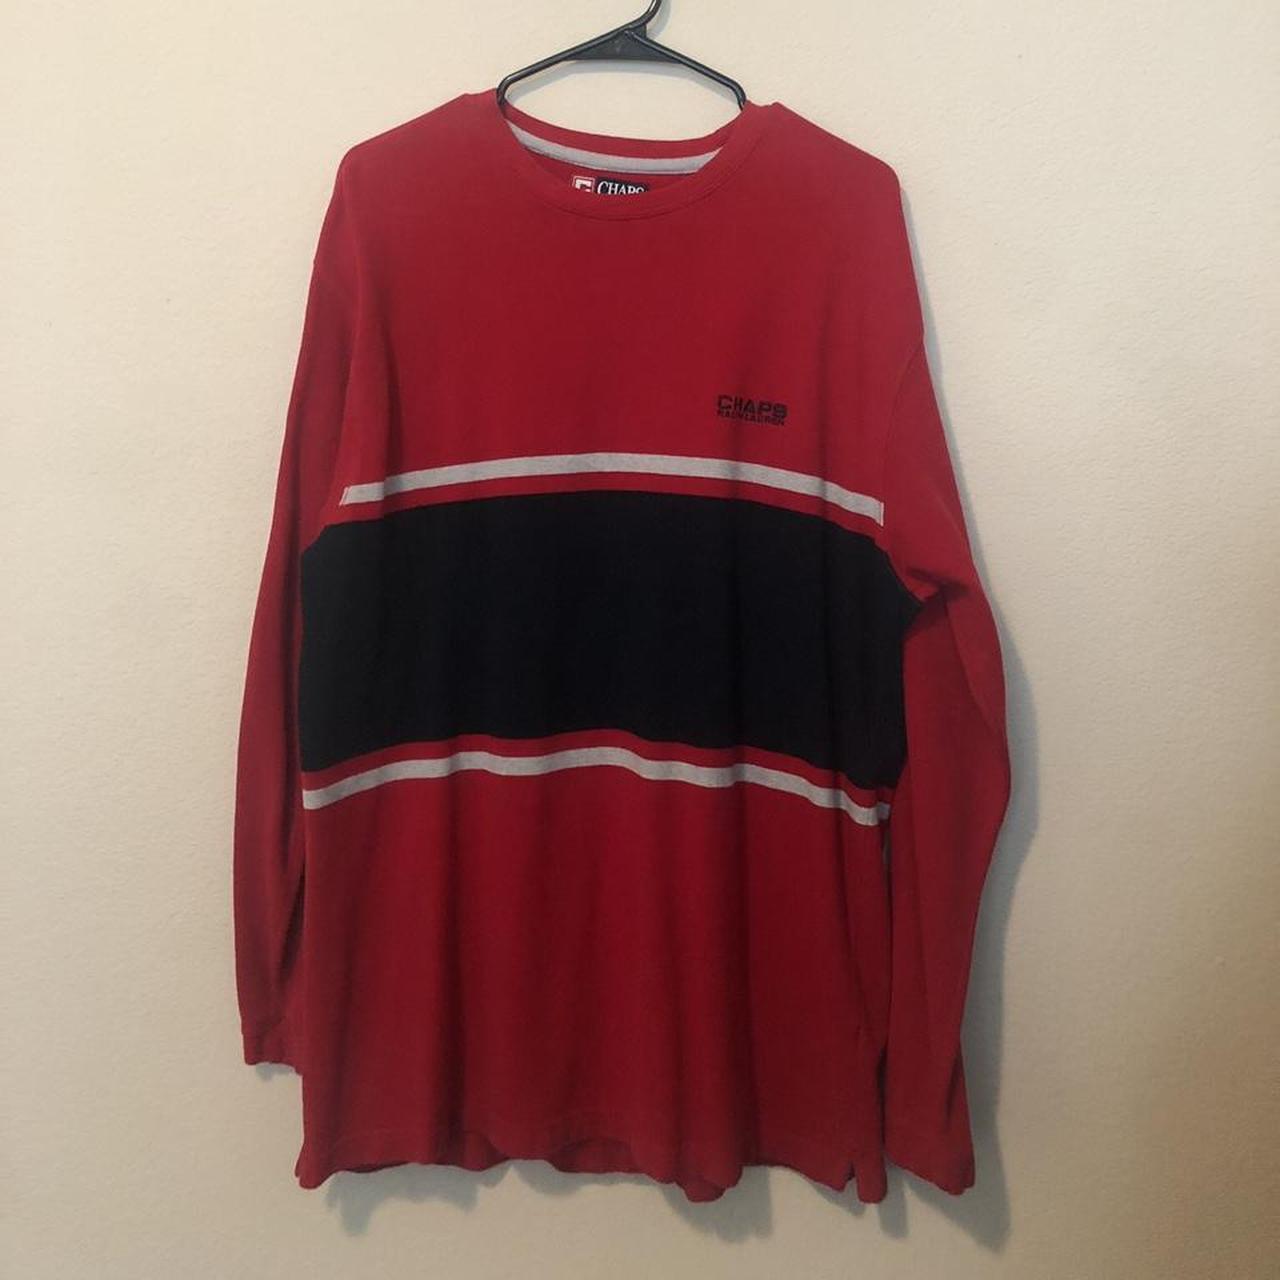 Vintage Chaps Ralph Lauren Sweater, Size Large, DM for